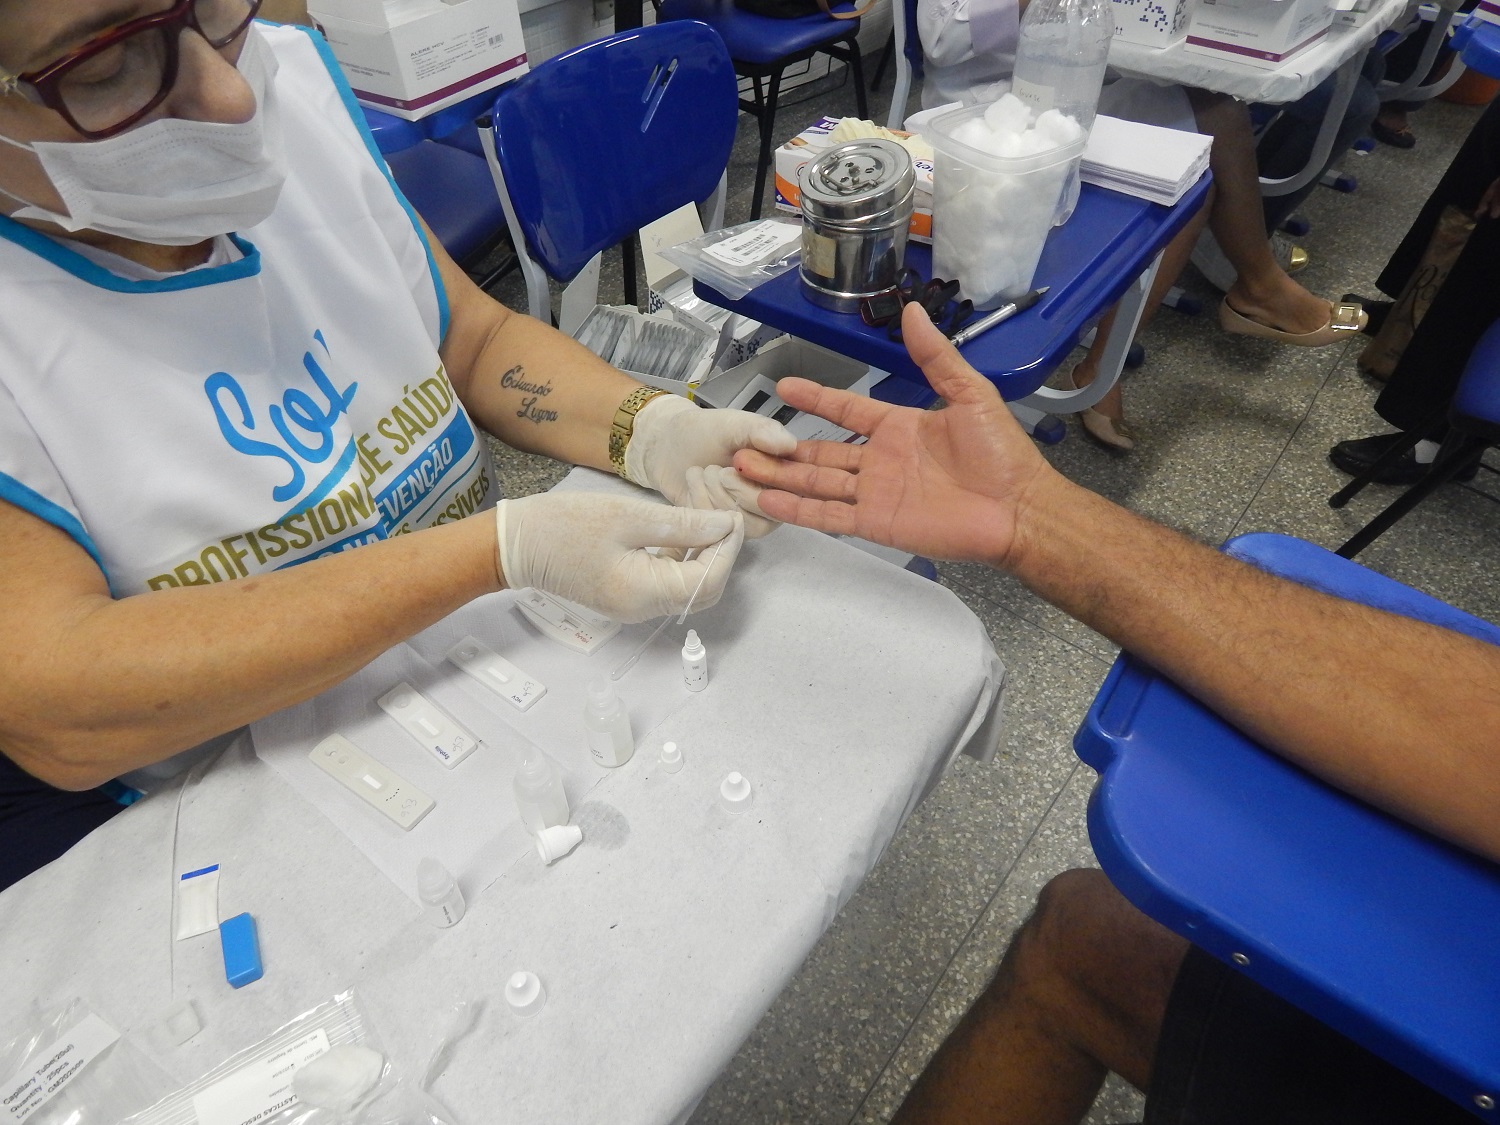 Procedimento simples retira gota de sangue do paciente através do puncionamento do dedo (Foto: Assessoria de Comunicação do HU)